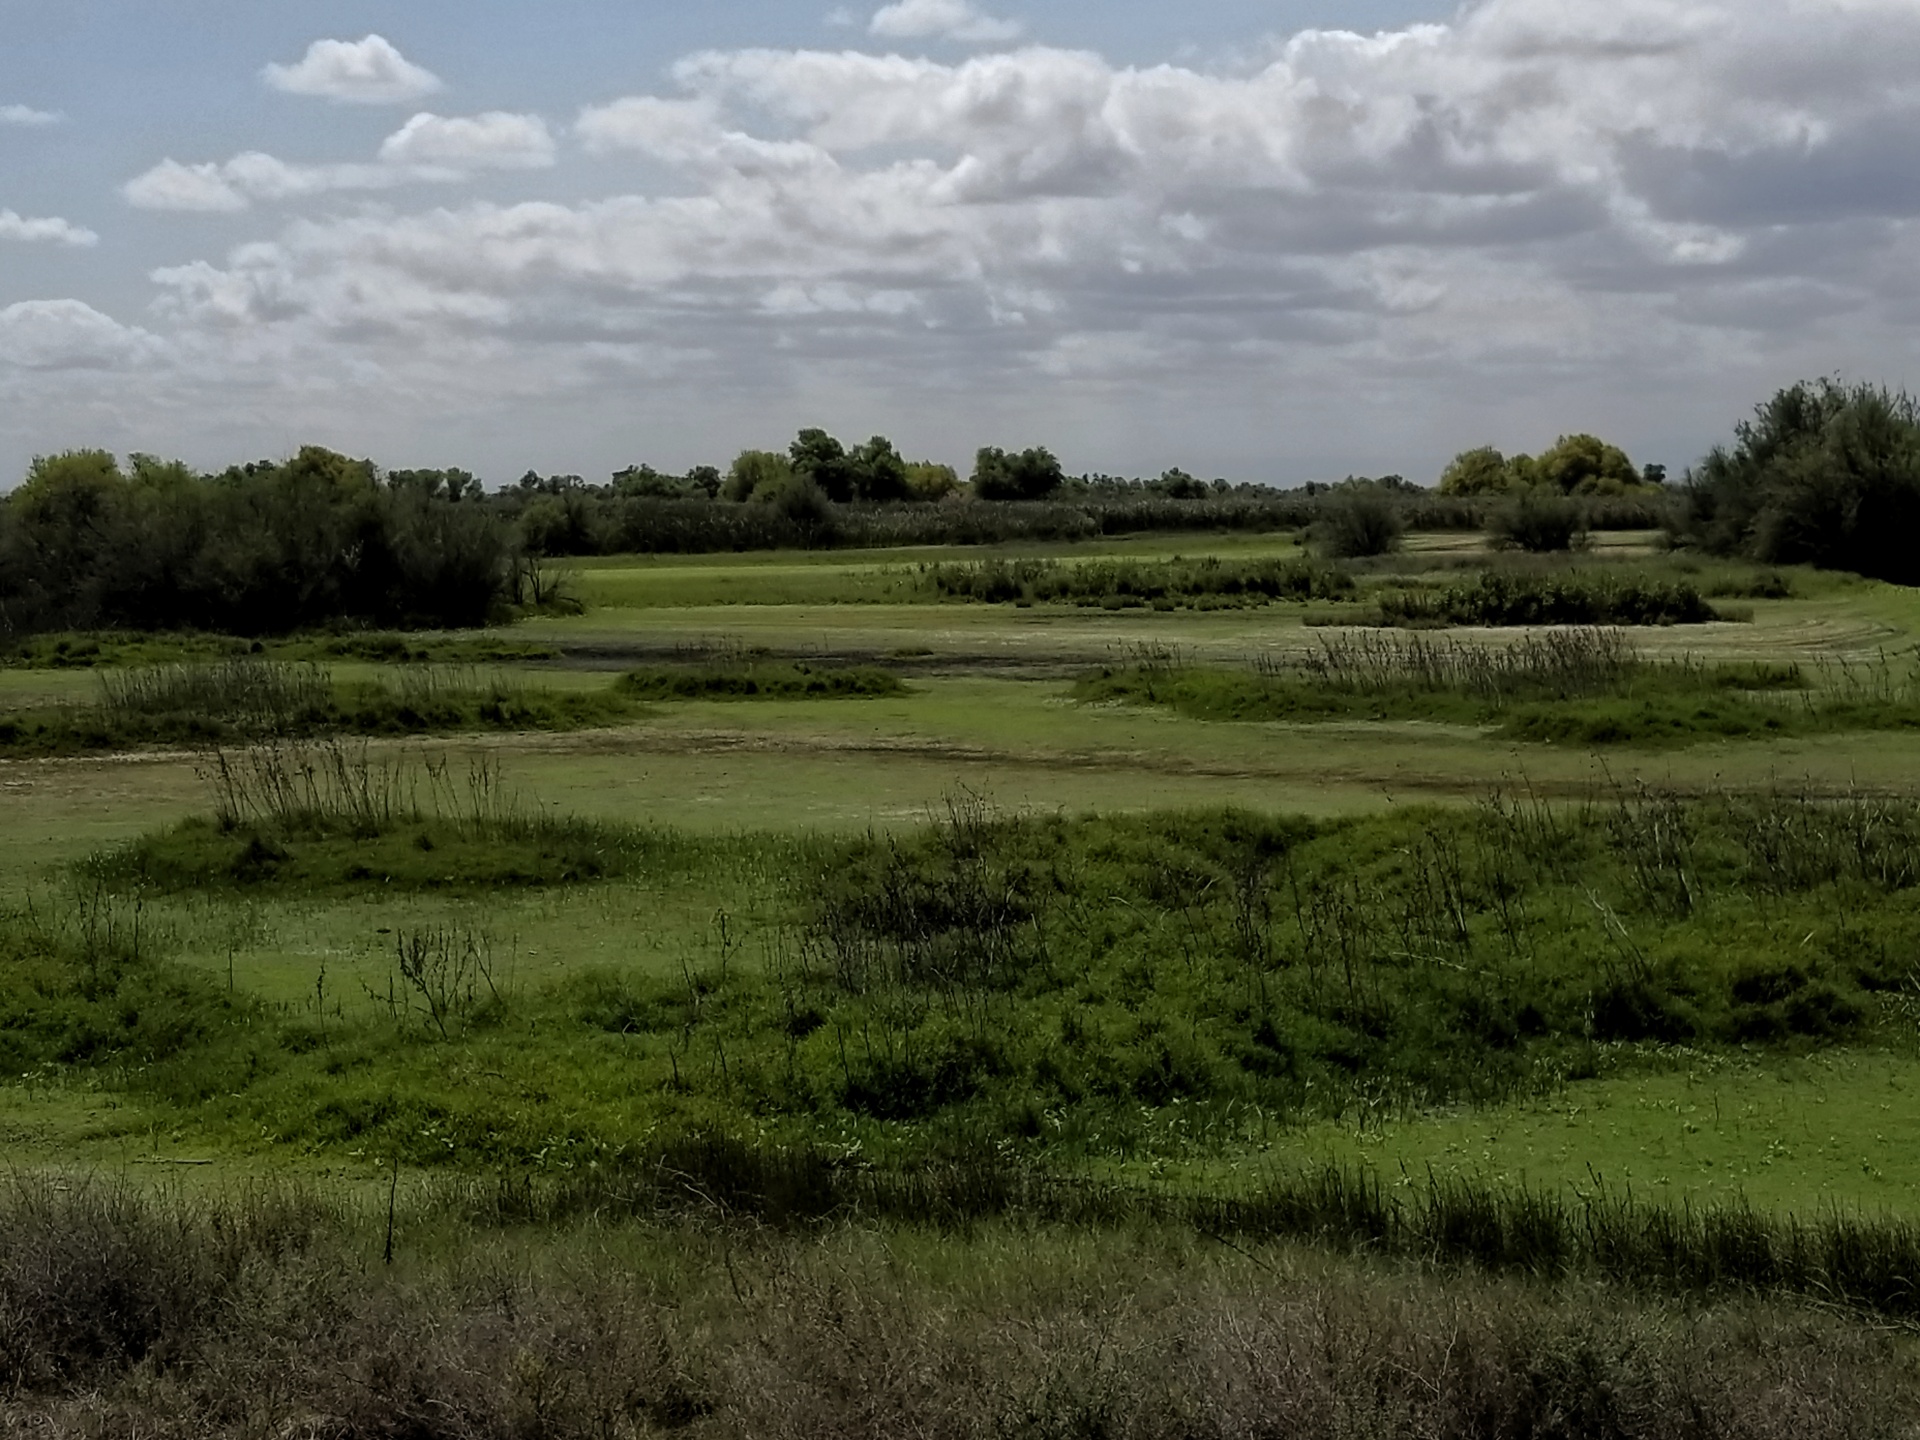 Greenbelt Landscape